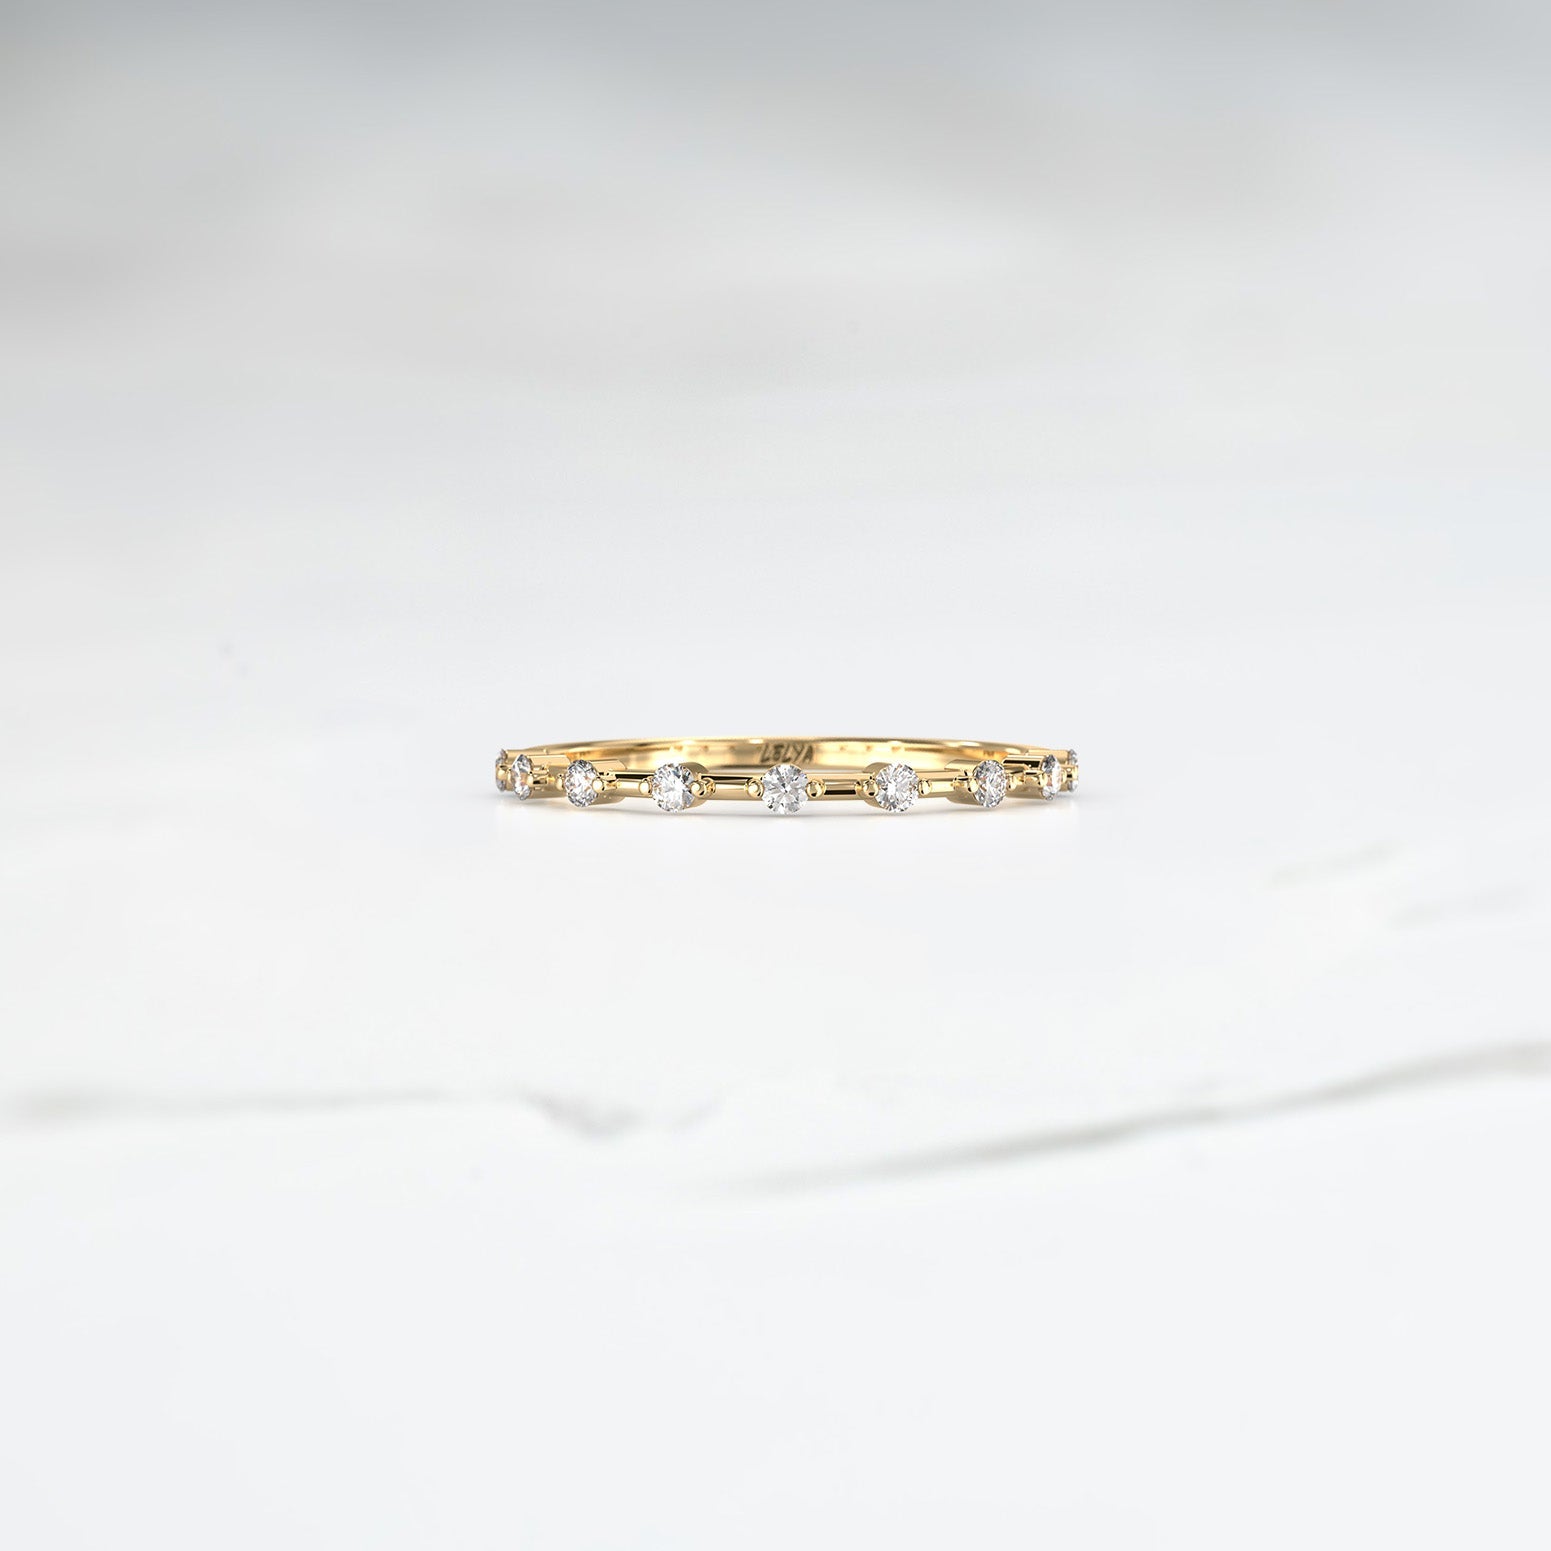 Diamond Ice Band - Lelya - bespoke engagement and wedding rings made in Scotland, UK